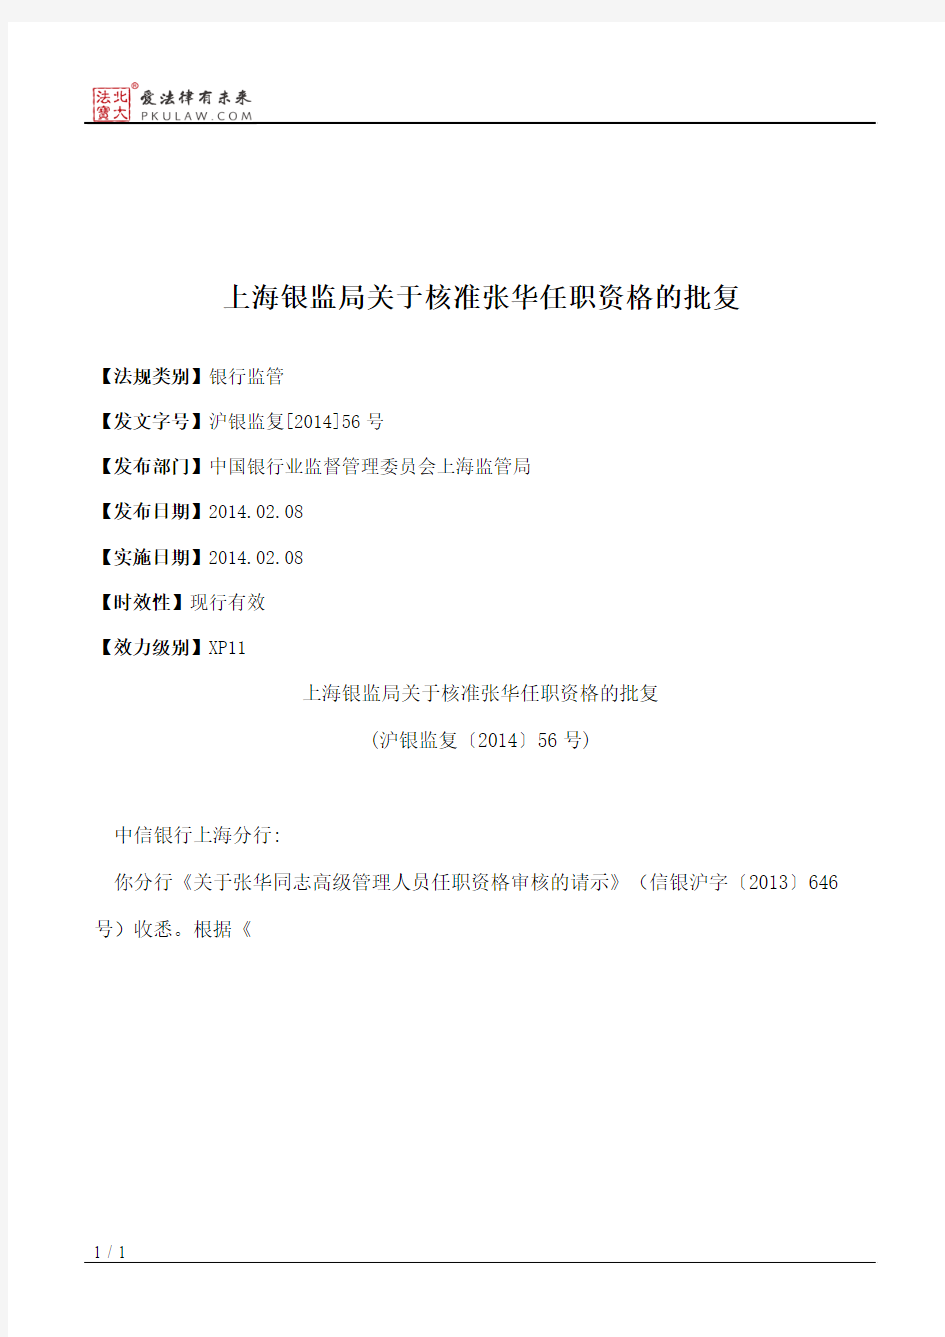 上海银监局关于核准张华任职资格的批复